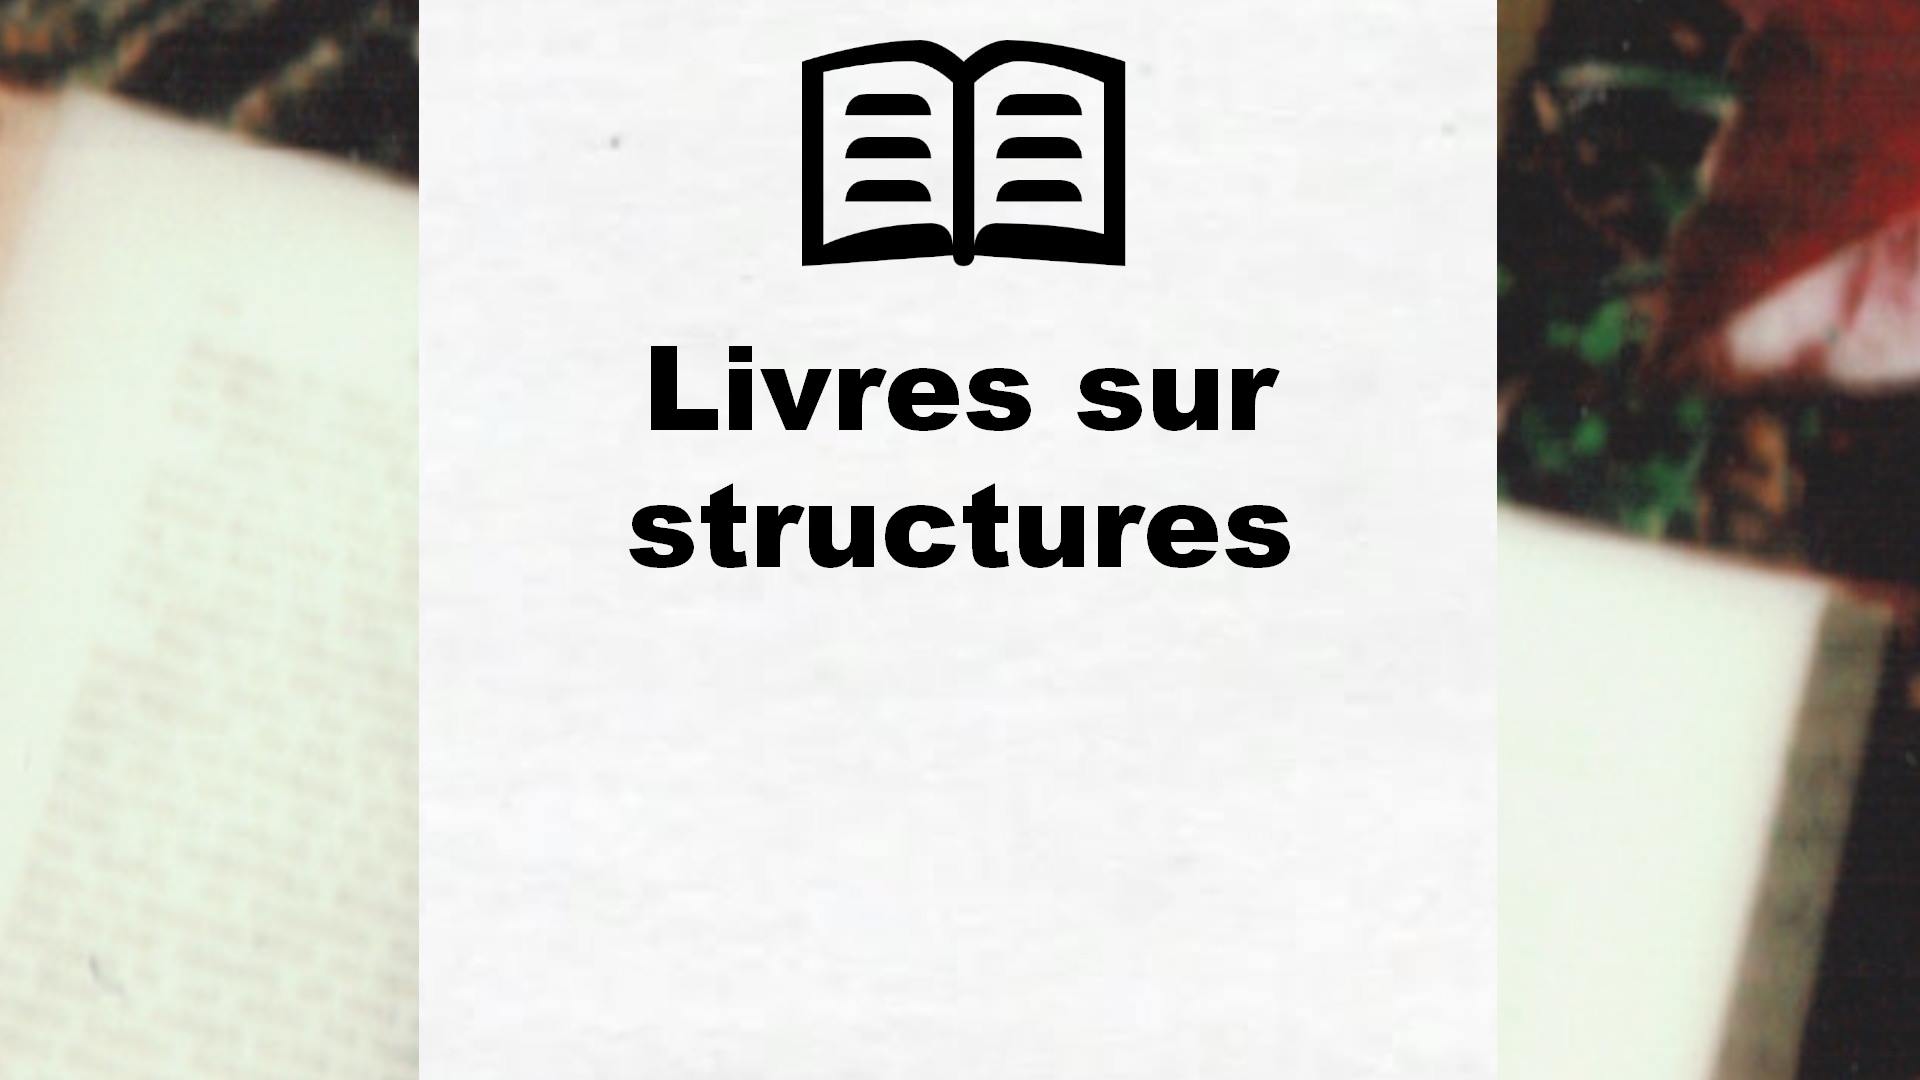 Livres sur structures